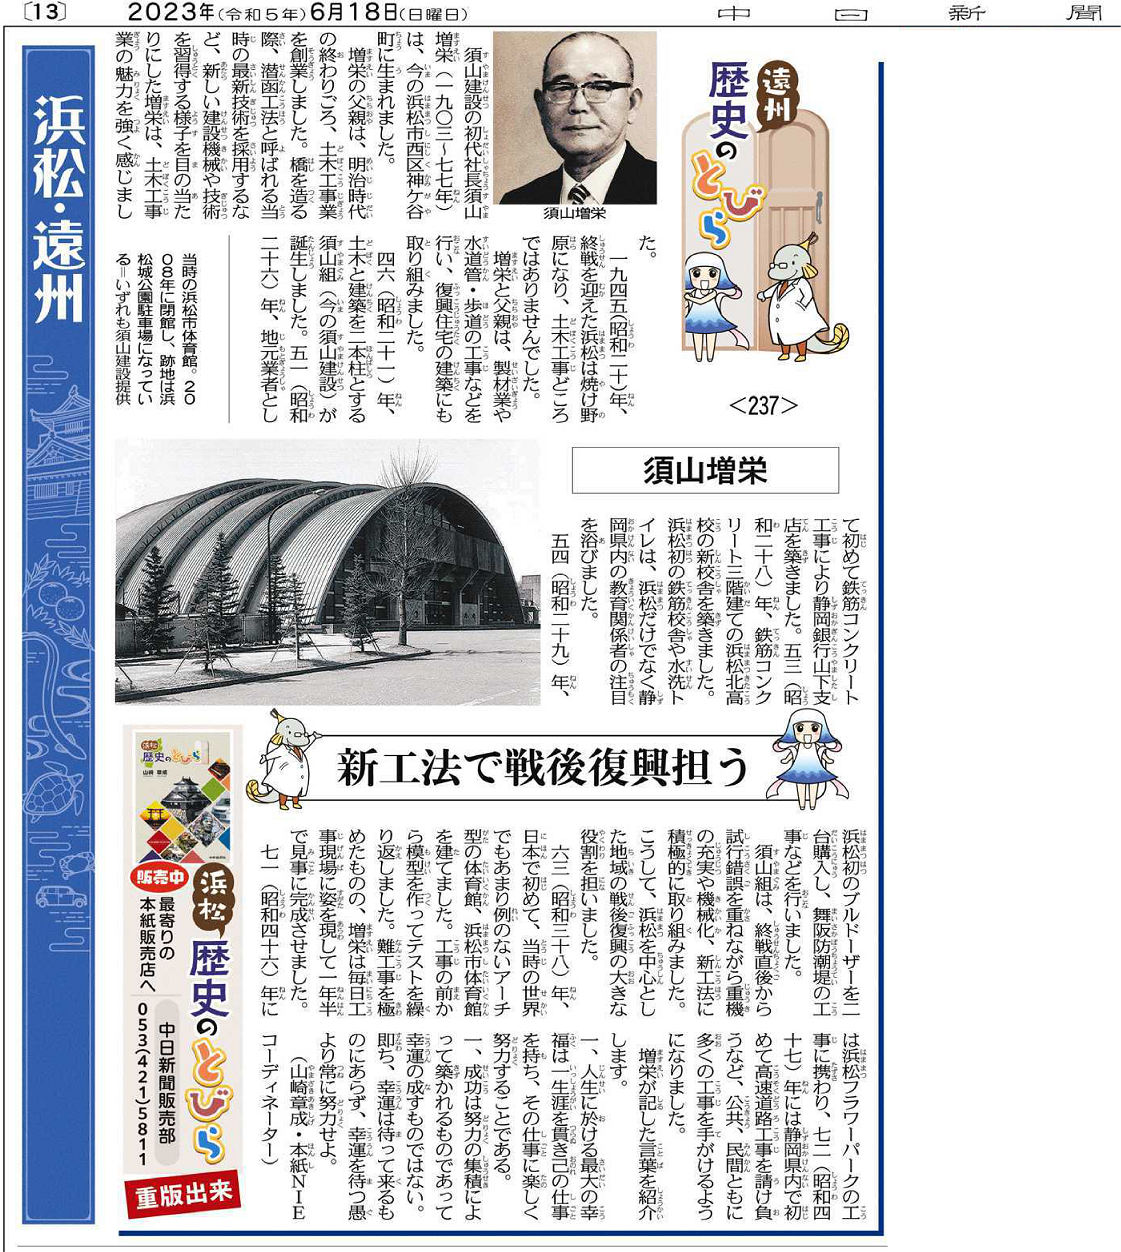 初代社長の須山増栄が中日新聞「遠州歴史のとびら」に掲載されました